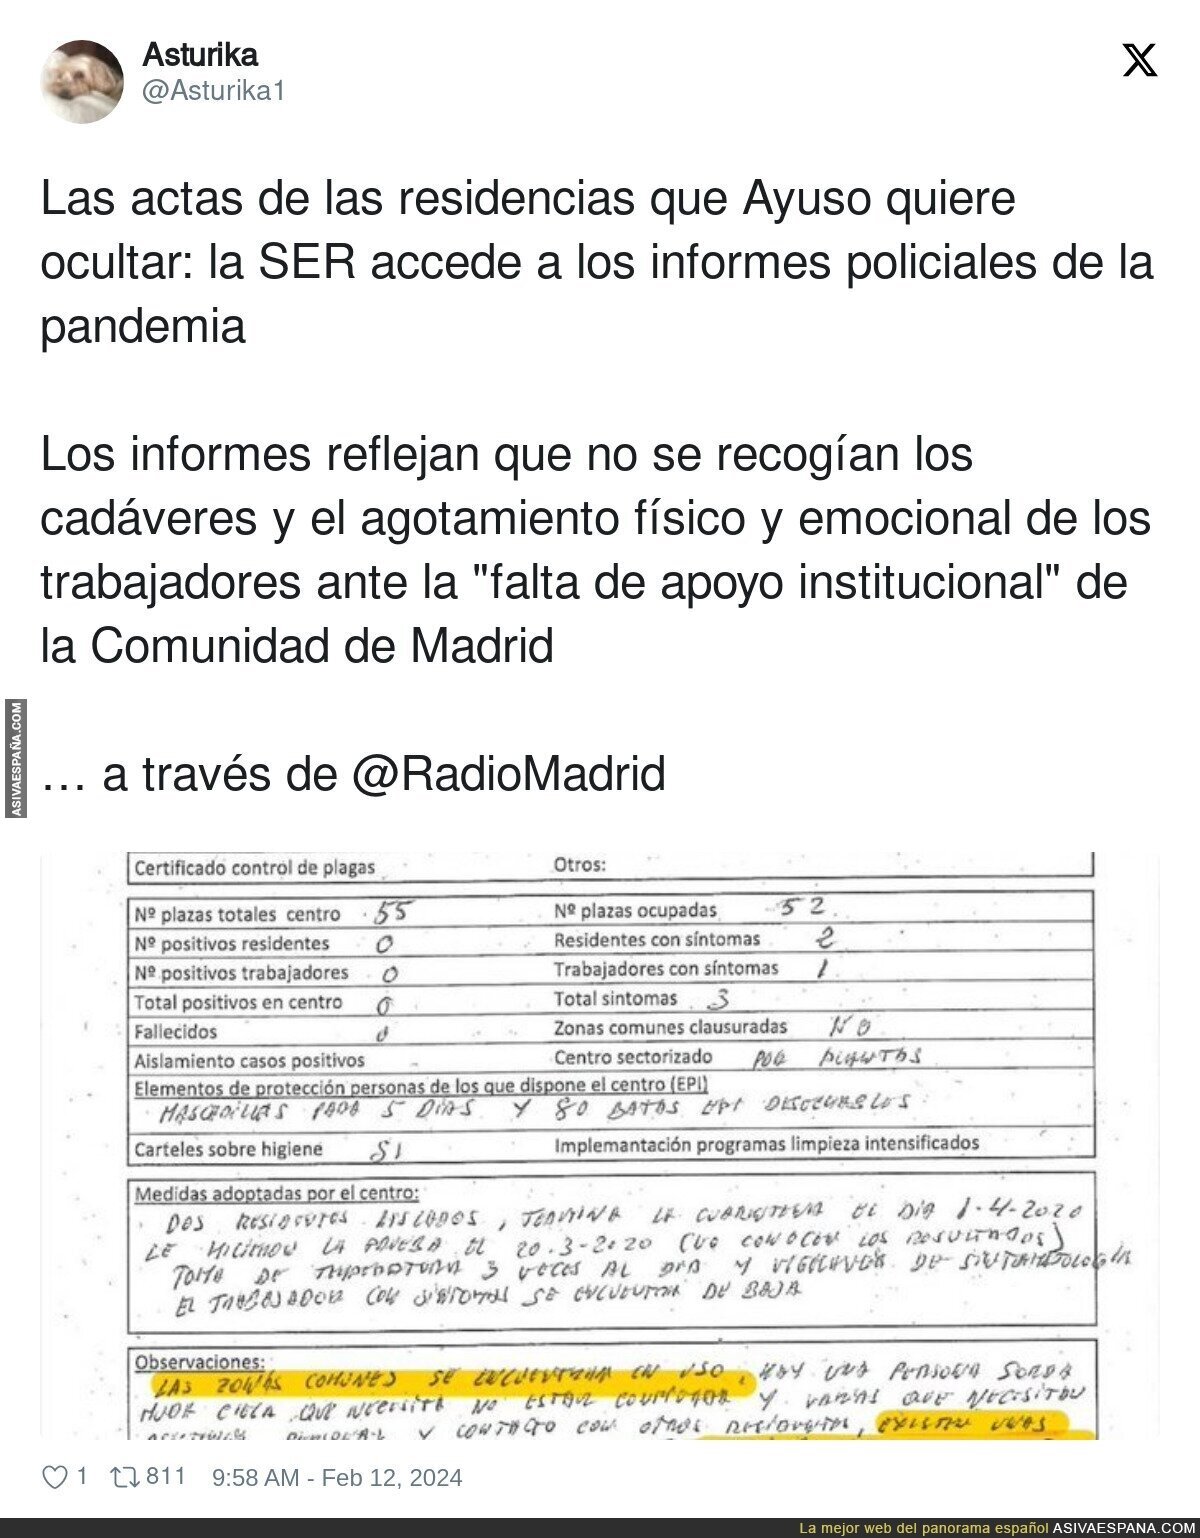 El horror que se vivió en las residencias de Madrid